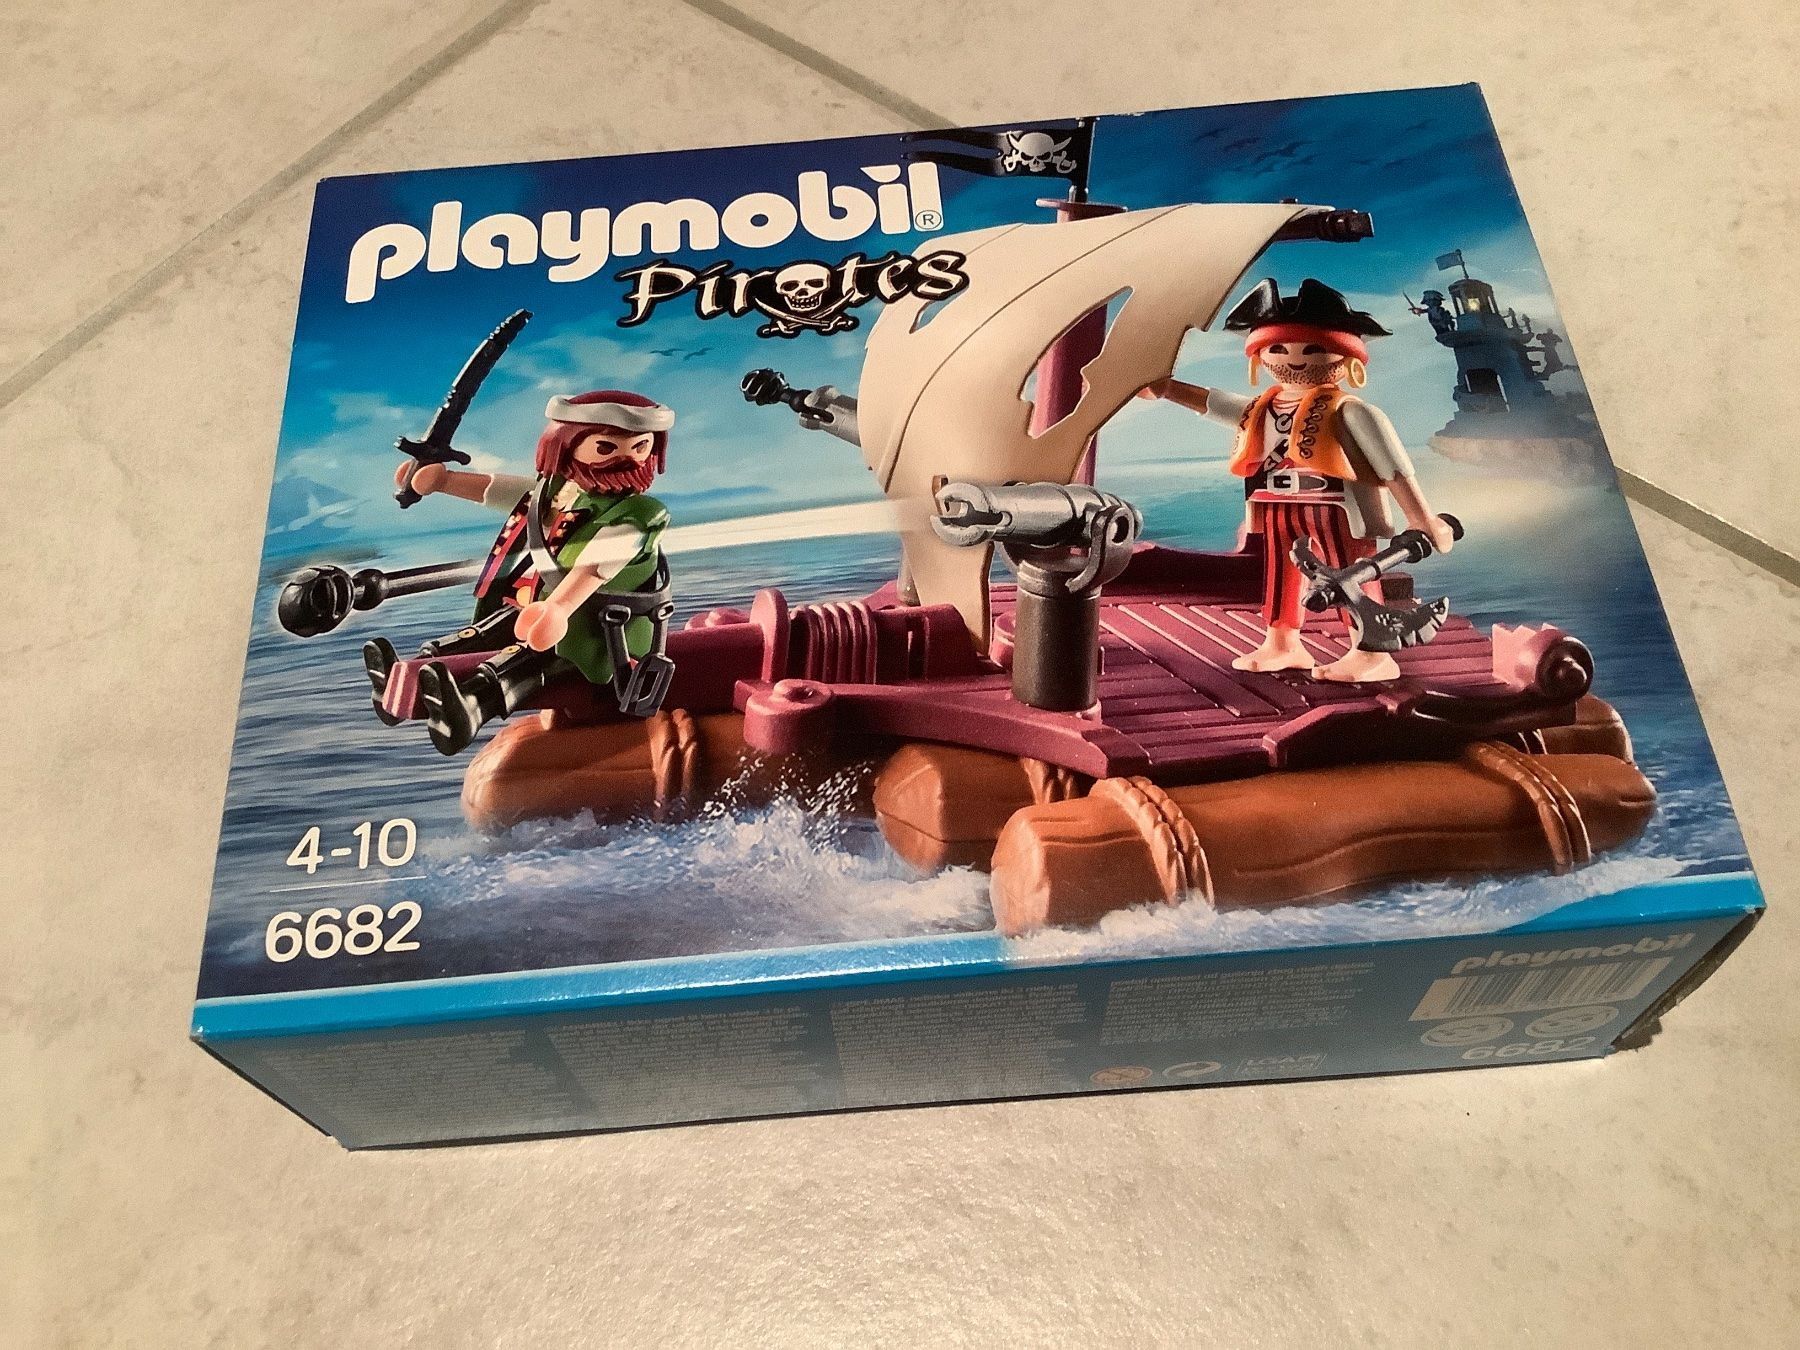 Pirates Piratenfloß mit Kanone zur Verteidigung Playmobil 6682 